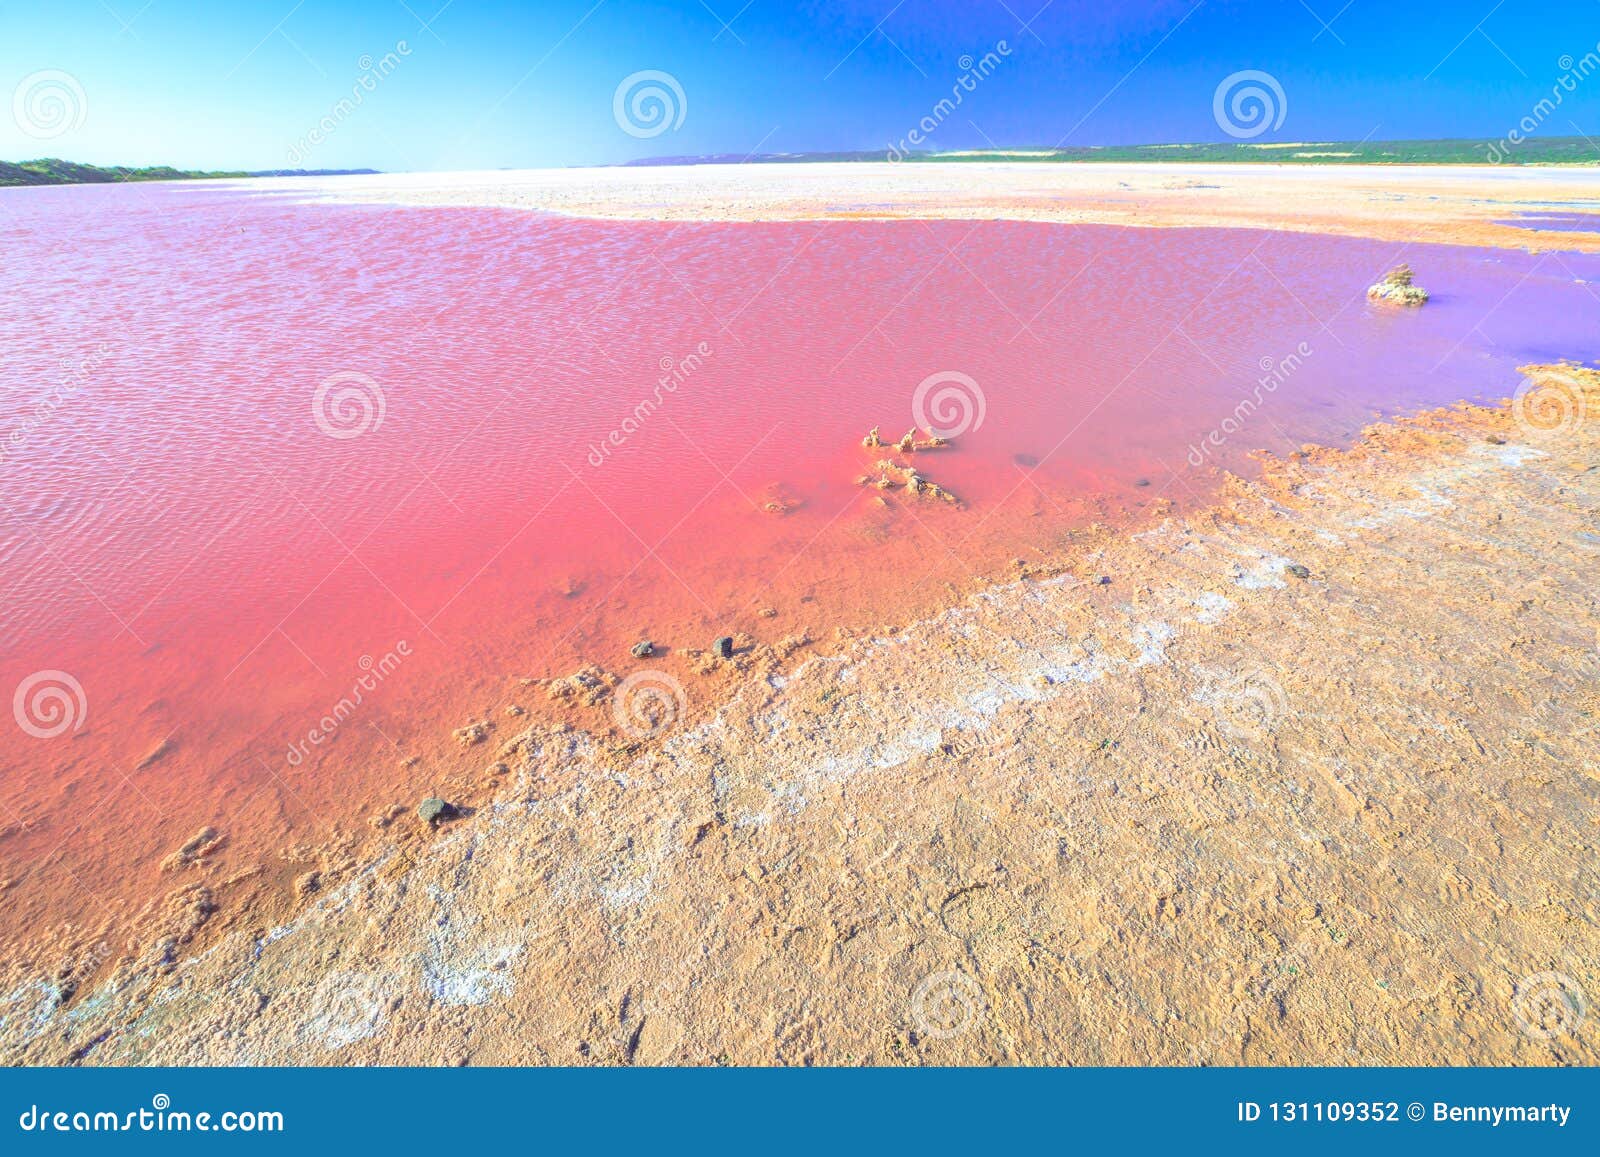 pink salt lake australia